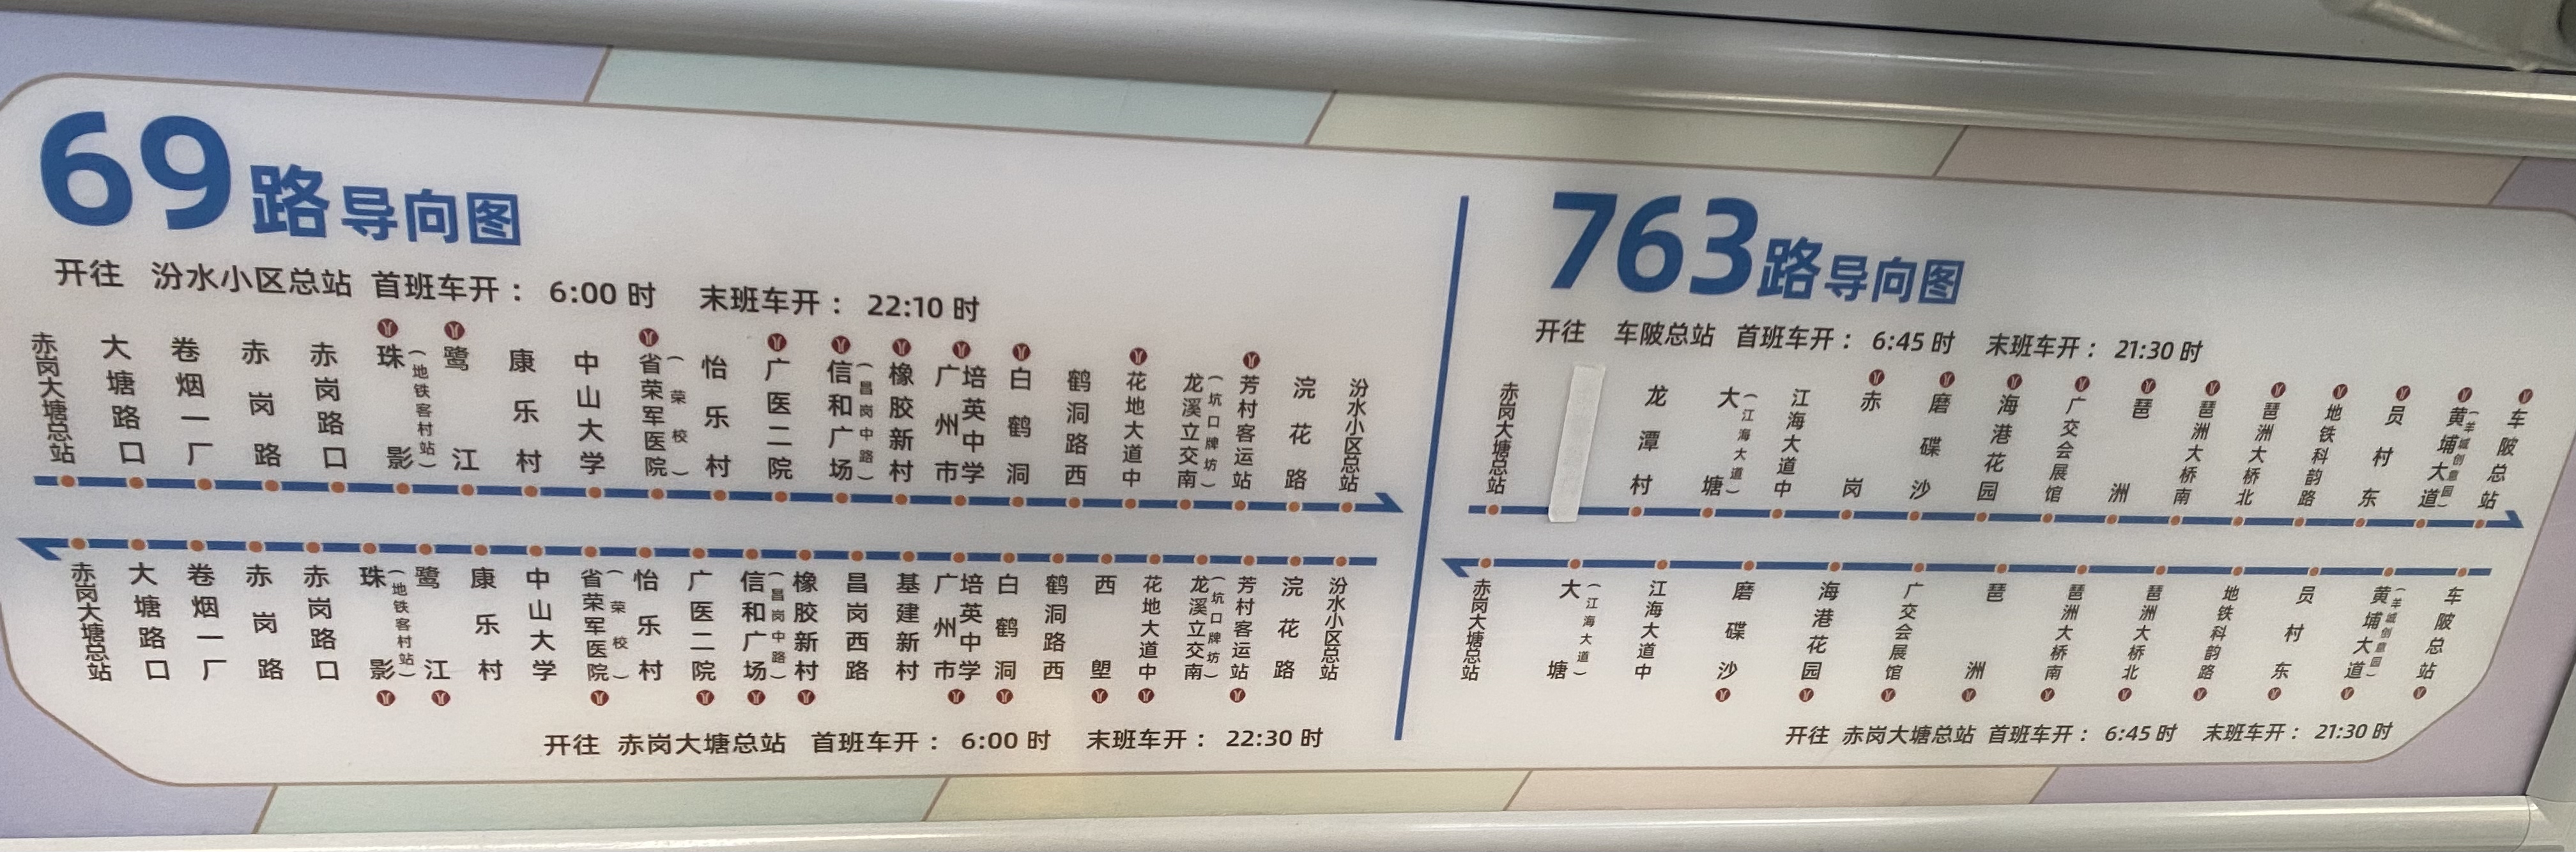 广州69路公交车路线